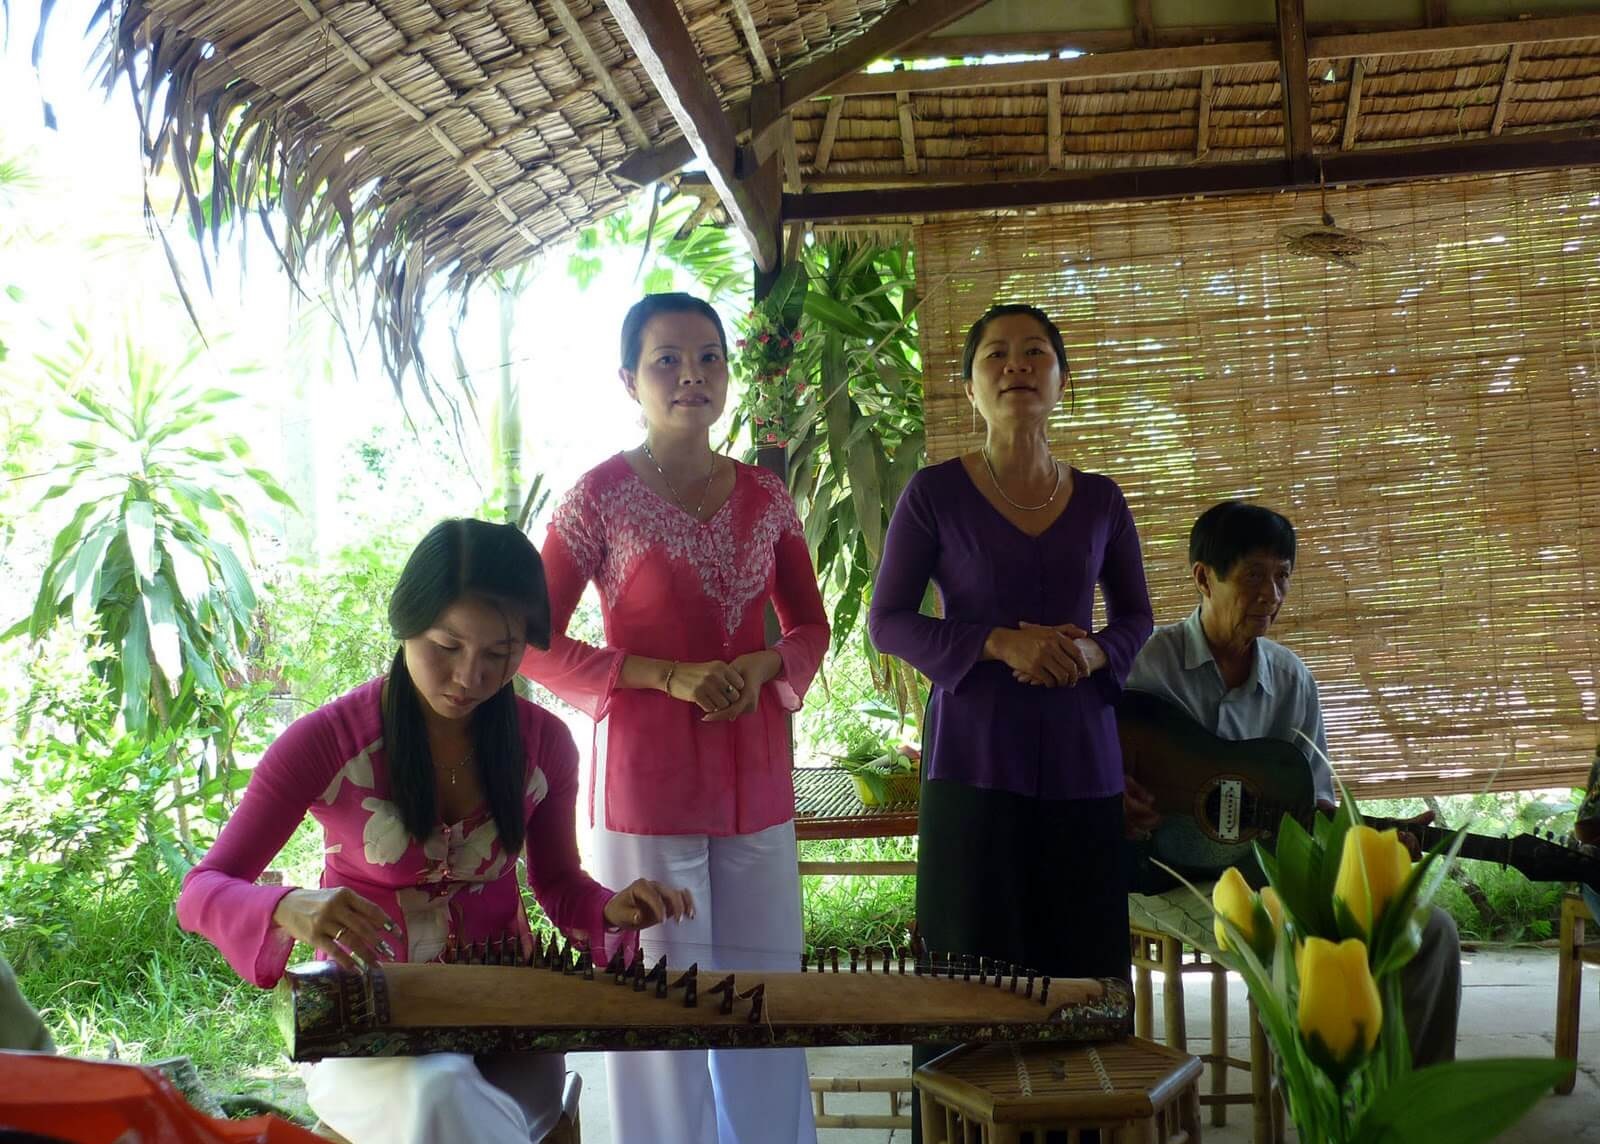 Xây dựng sản phẩm mới - hát chặp cải lương phục vụ hoạt động du lịch tại cồn Thới Sơn, Tiền Giang